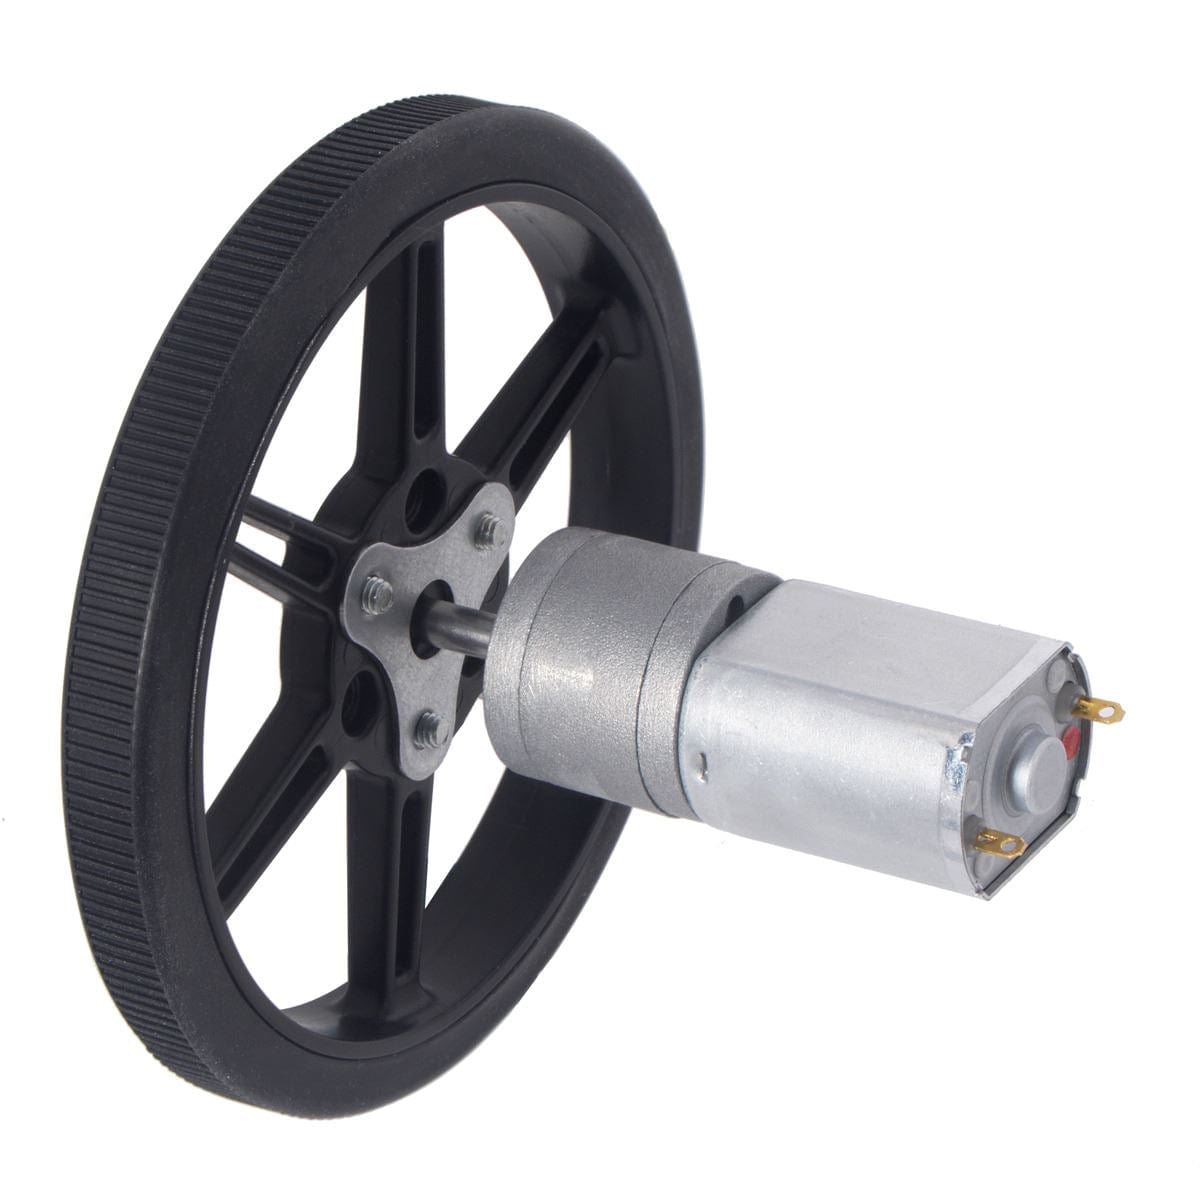 Pololu Multi-Hub Wheel w/Inserts for 3mm/4mm Shafts - 80x10mm Black (2-Pack) - The Pi Hut